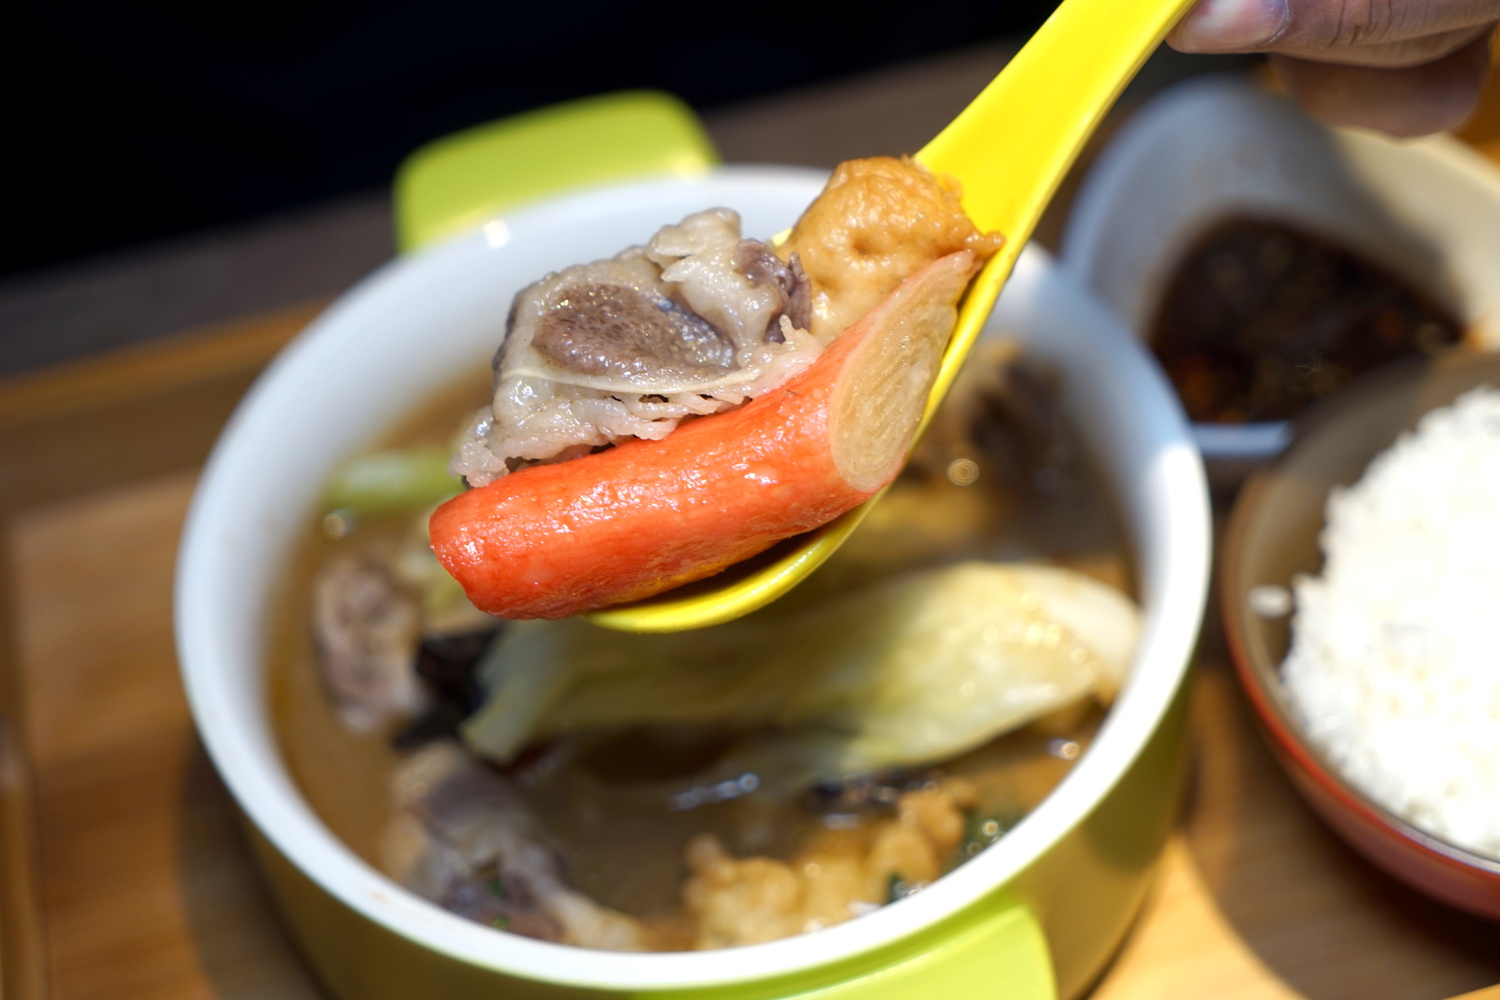 天冷最精緻而高貴不貴的個人鍋物『12MINI精巧小火鍋』南京復興必吃美食、慶城街美食 @梅格(Angelababy)享樂日記